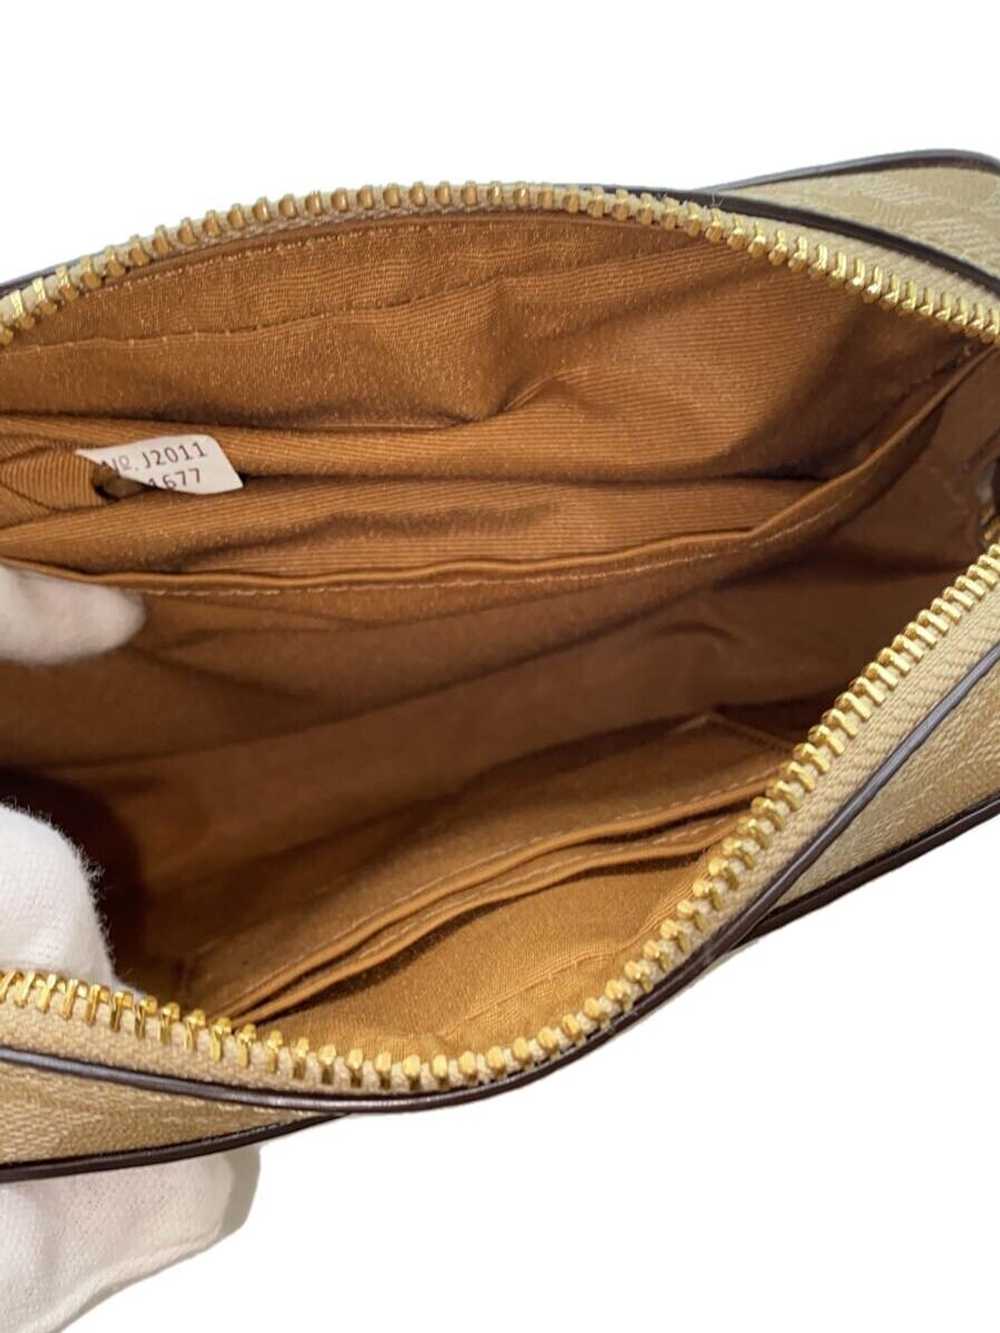 Coach Signature Mini Camera Bag Shoulder Bag - image 6